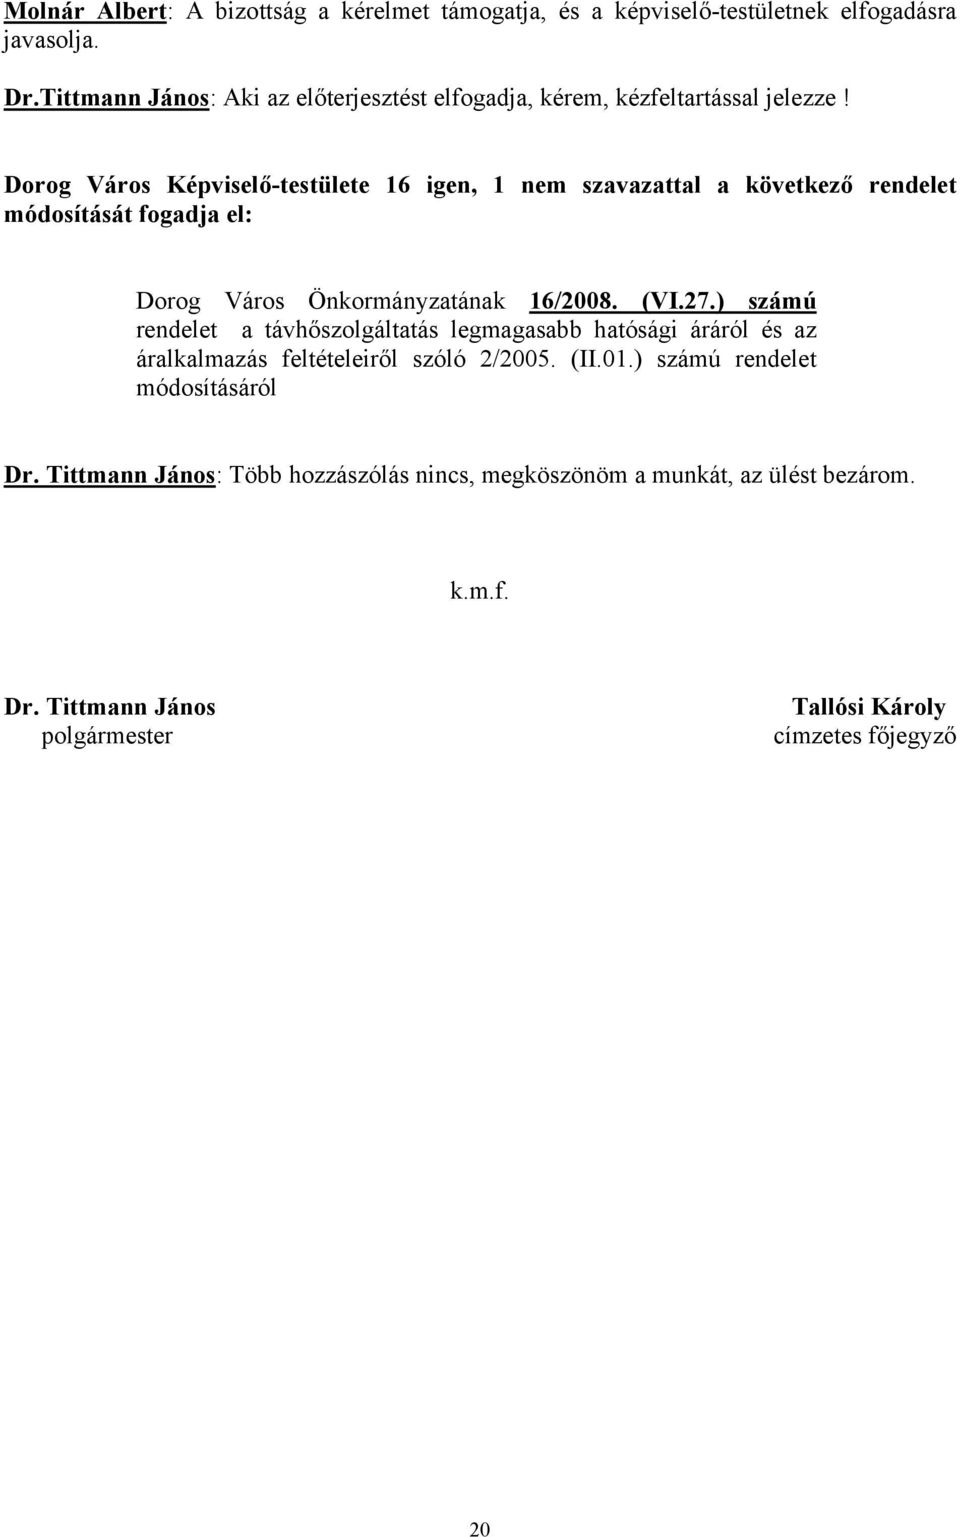 Dorog Város Képviselő-testülete 16 igen, 1 nem szavazattal a következő rendelet módosítását fogadja el: Dorog Város Önkormányzatának 16/2008. (VI.27.